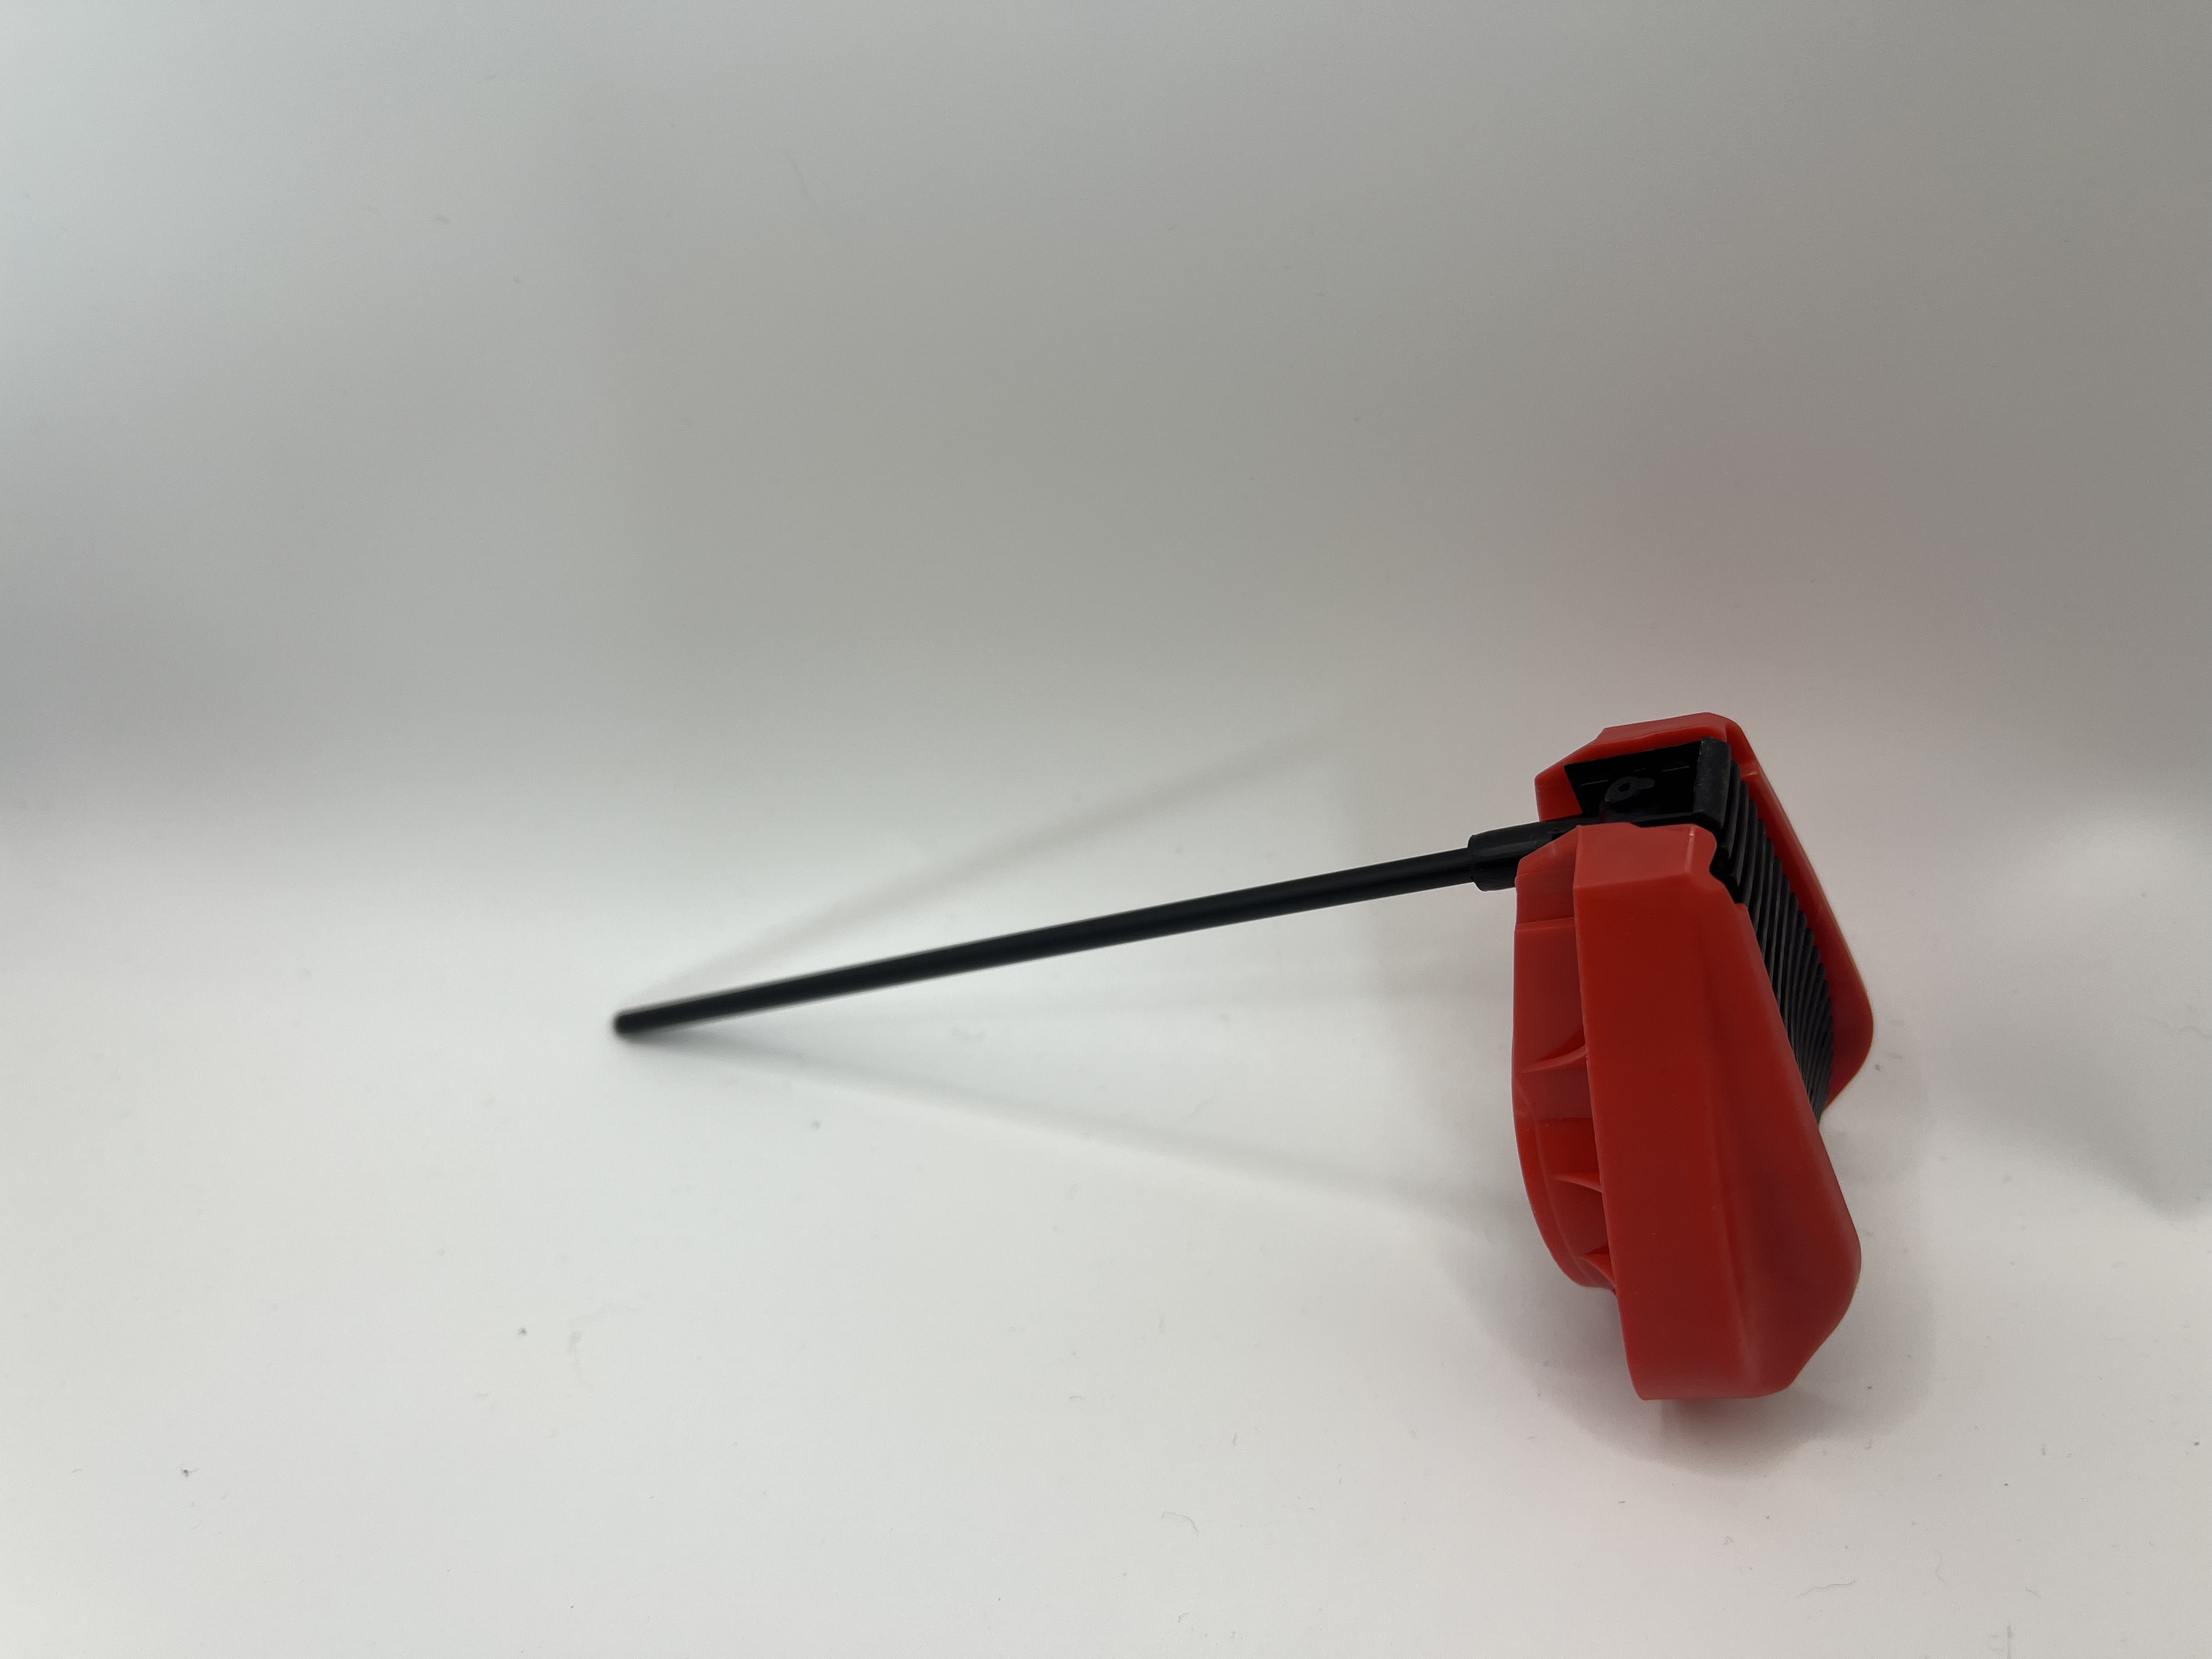 Praktický plnicí uzávěr vybavený hadičkou pro snadné dávkování kapalin v domácích a osobních aplikacích